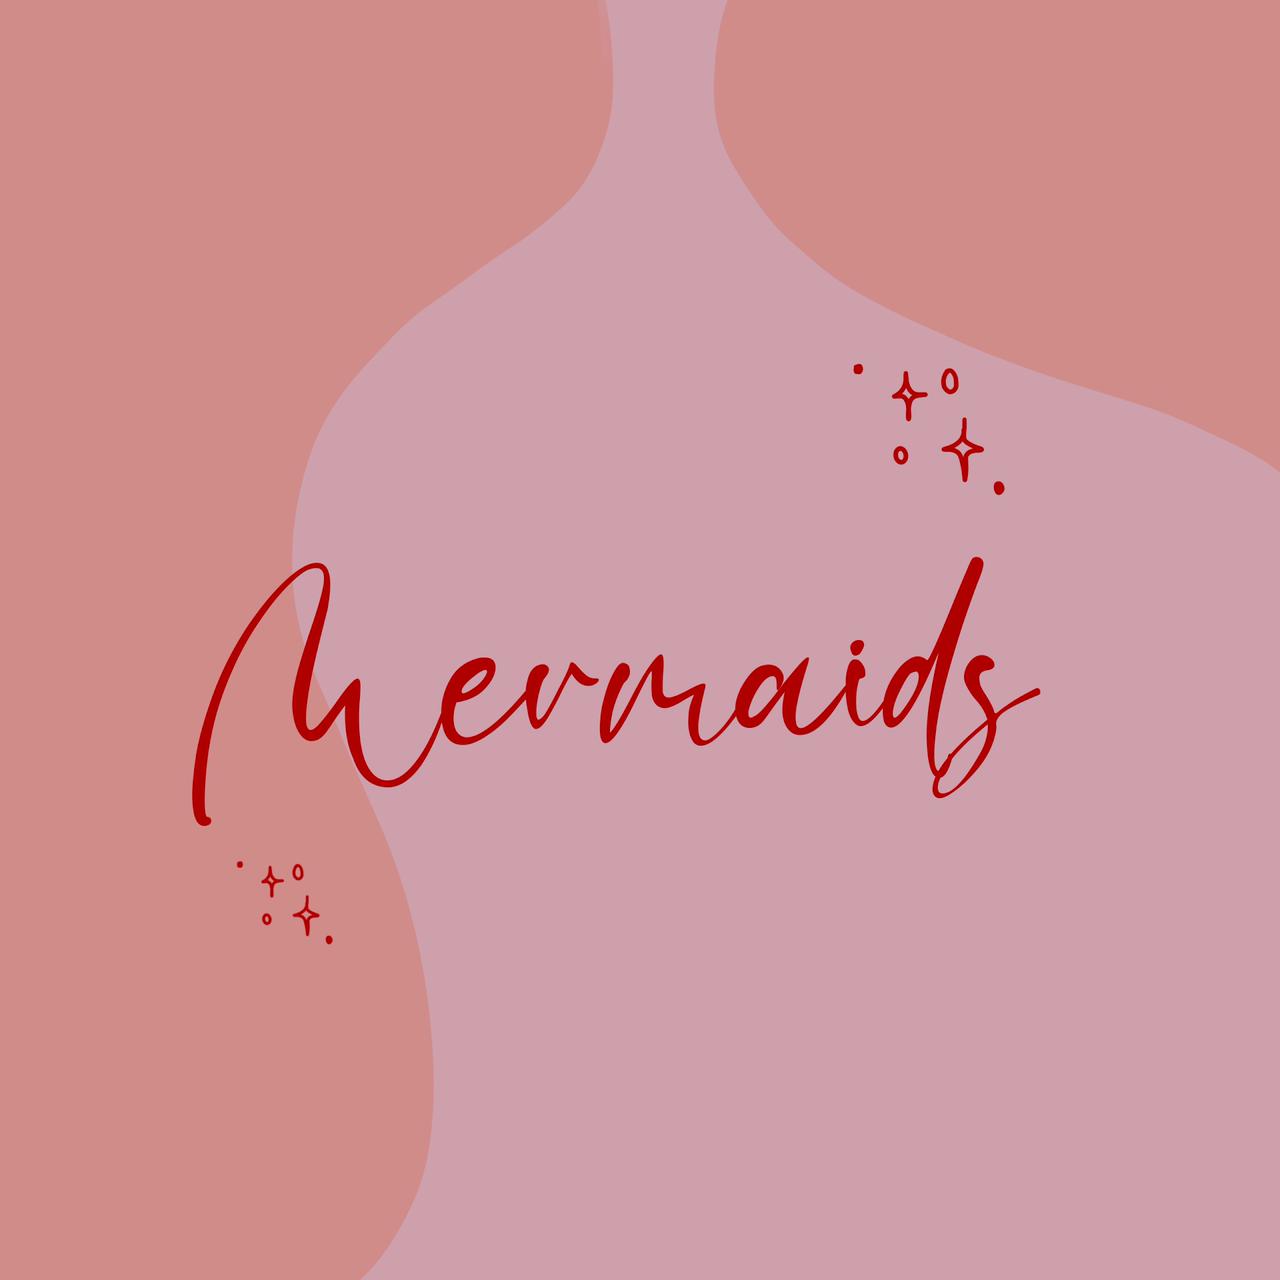 By mermaids